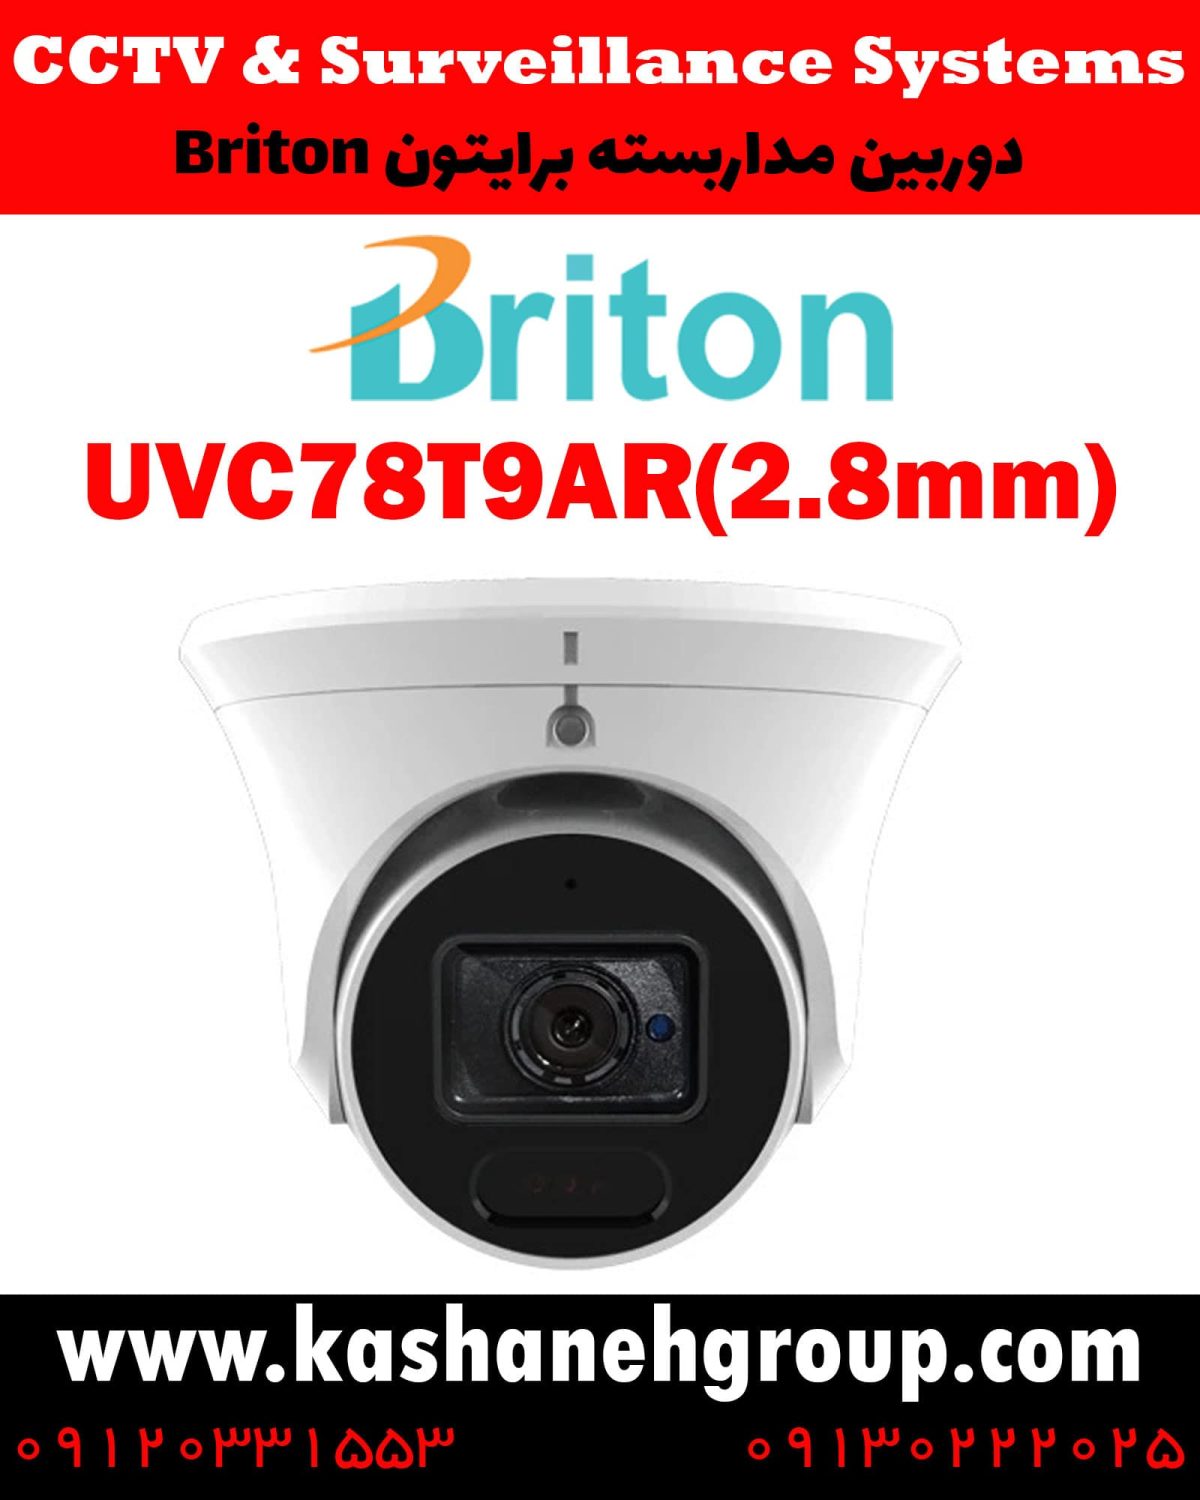 دوربین مداربسته UVC78T9AR(2.8MM)، دوربین مداربسته برایتون UVC78T9AR(2.8MM)، دوربین مداربسته Briton UVC78T9AR(2.8MM)، دوربین برایتون UVC78T9AR(2.8MM)، قیمت دوربین برایتون، نرم افزار برایتون، تعمیر دوربین برایتون، نمایندگی برایتون، نماینده برایتون، قیمت دوربین برایتون، مشخصات دوربین UVC78T9AR(2.8MM)، قیمت دوربین برایتون UVC78T9AR(2.8MM)، قیمت دوربین UVC78T9AR(2.8MM) برایتون، پک دوربین برایتون، پک دوربین مداربسته برایتون، دوربین Briton، دوربین مداربسته برایتون Briton UVC78T9AR(2.8MM) ، نماینده دوربین Briton، نمایندگی دوربین Briton، نرم افزار موبایل دوربین مداربسته Briton، دوربین مداربسته، قیمت دوربین مداربسته، دوربین مدار بسته، خرید دوربین مداربسته، کابل دوربین مداربسته، پک دوربین مداربسته، دوربین مداربسته سیم کارت خور، دوربین مداربسته لامپی، آداپتور دوربین مداربسته، دوربین مداربسته شیائومی، بهترین مارک دوربین مداربسته، بهترین نرم افزار انتقال تصویر دوربین مداربسته روی موبایل، بهترین مارک دوربین مداربسته، دوربین برایتون، دوربین مداربسته در اصفهان، قیمت دوربین مداربسته در اصفهان، نماینده برایتون در اصفهان، نماینده دوربین برایتون اصفهان، نصب دوربین مداربسته در اصفهان، تعمیر دوربین مداربسته در اصفهان، شرکت دوربین در اصفهان